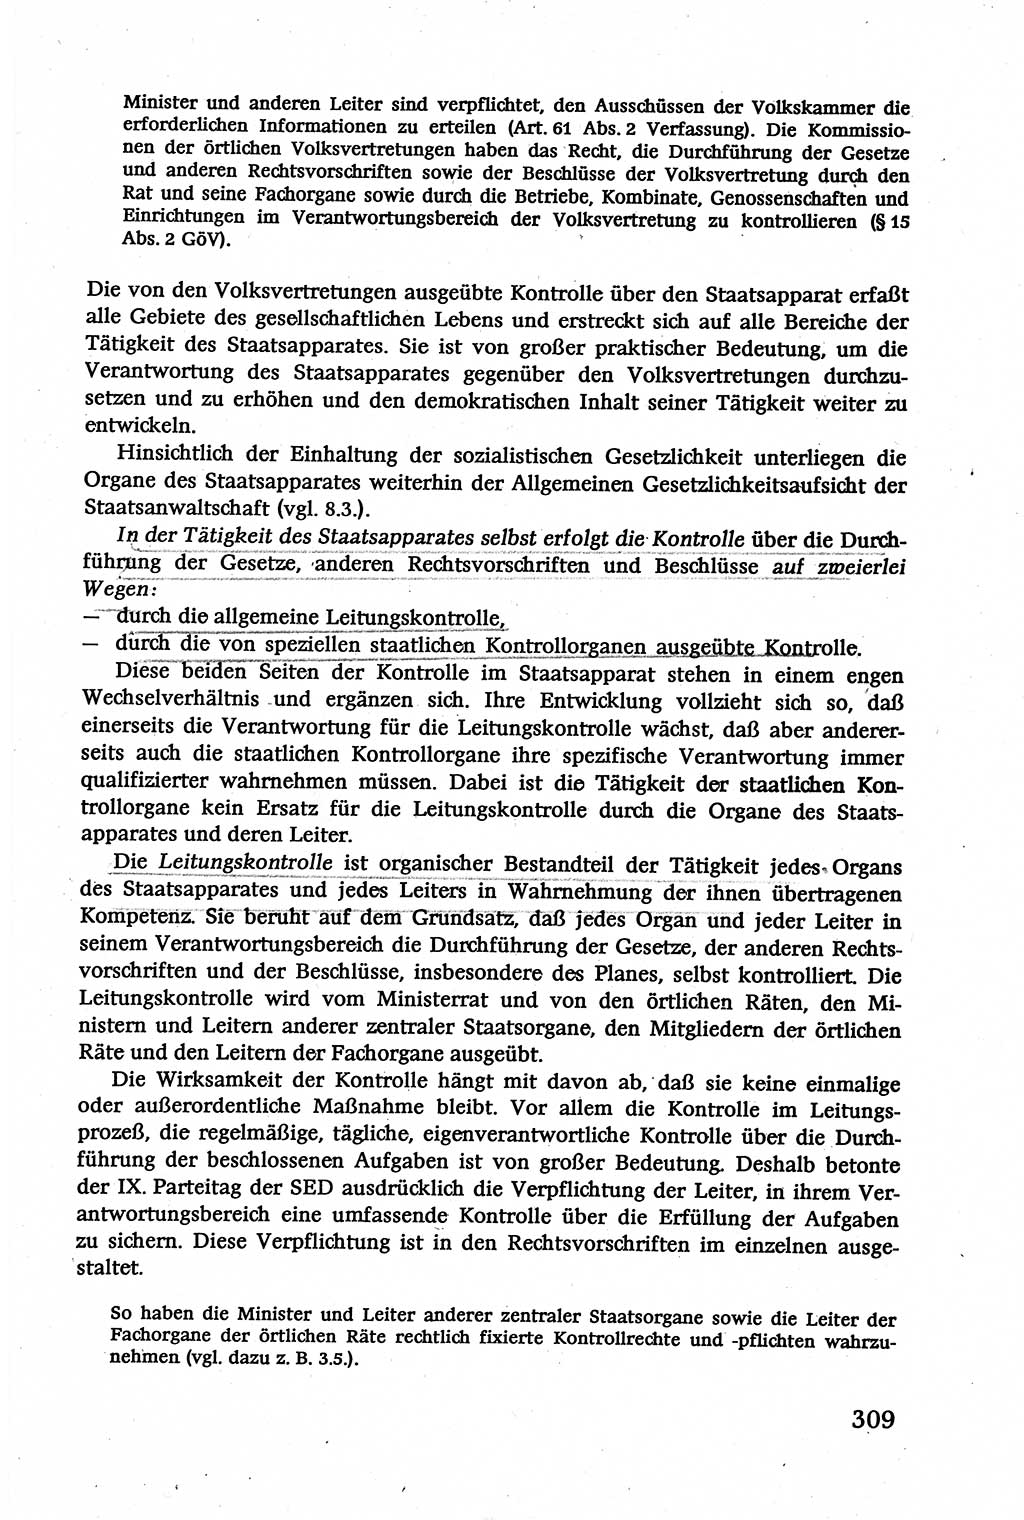 Verwaltungsrecht [Deutsche Demokratische Republik (DDR)], Lehrbuch 1979, Seite 309 (Verw.-R. DDR Lb. 1979, S. 309)